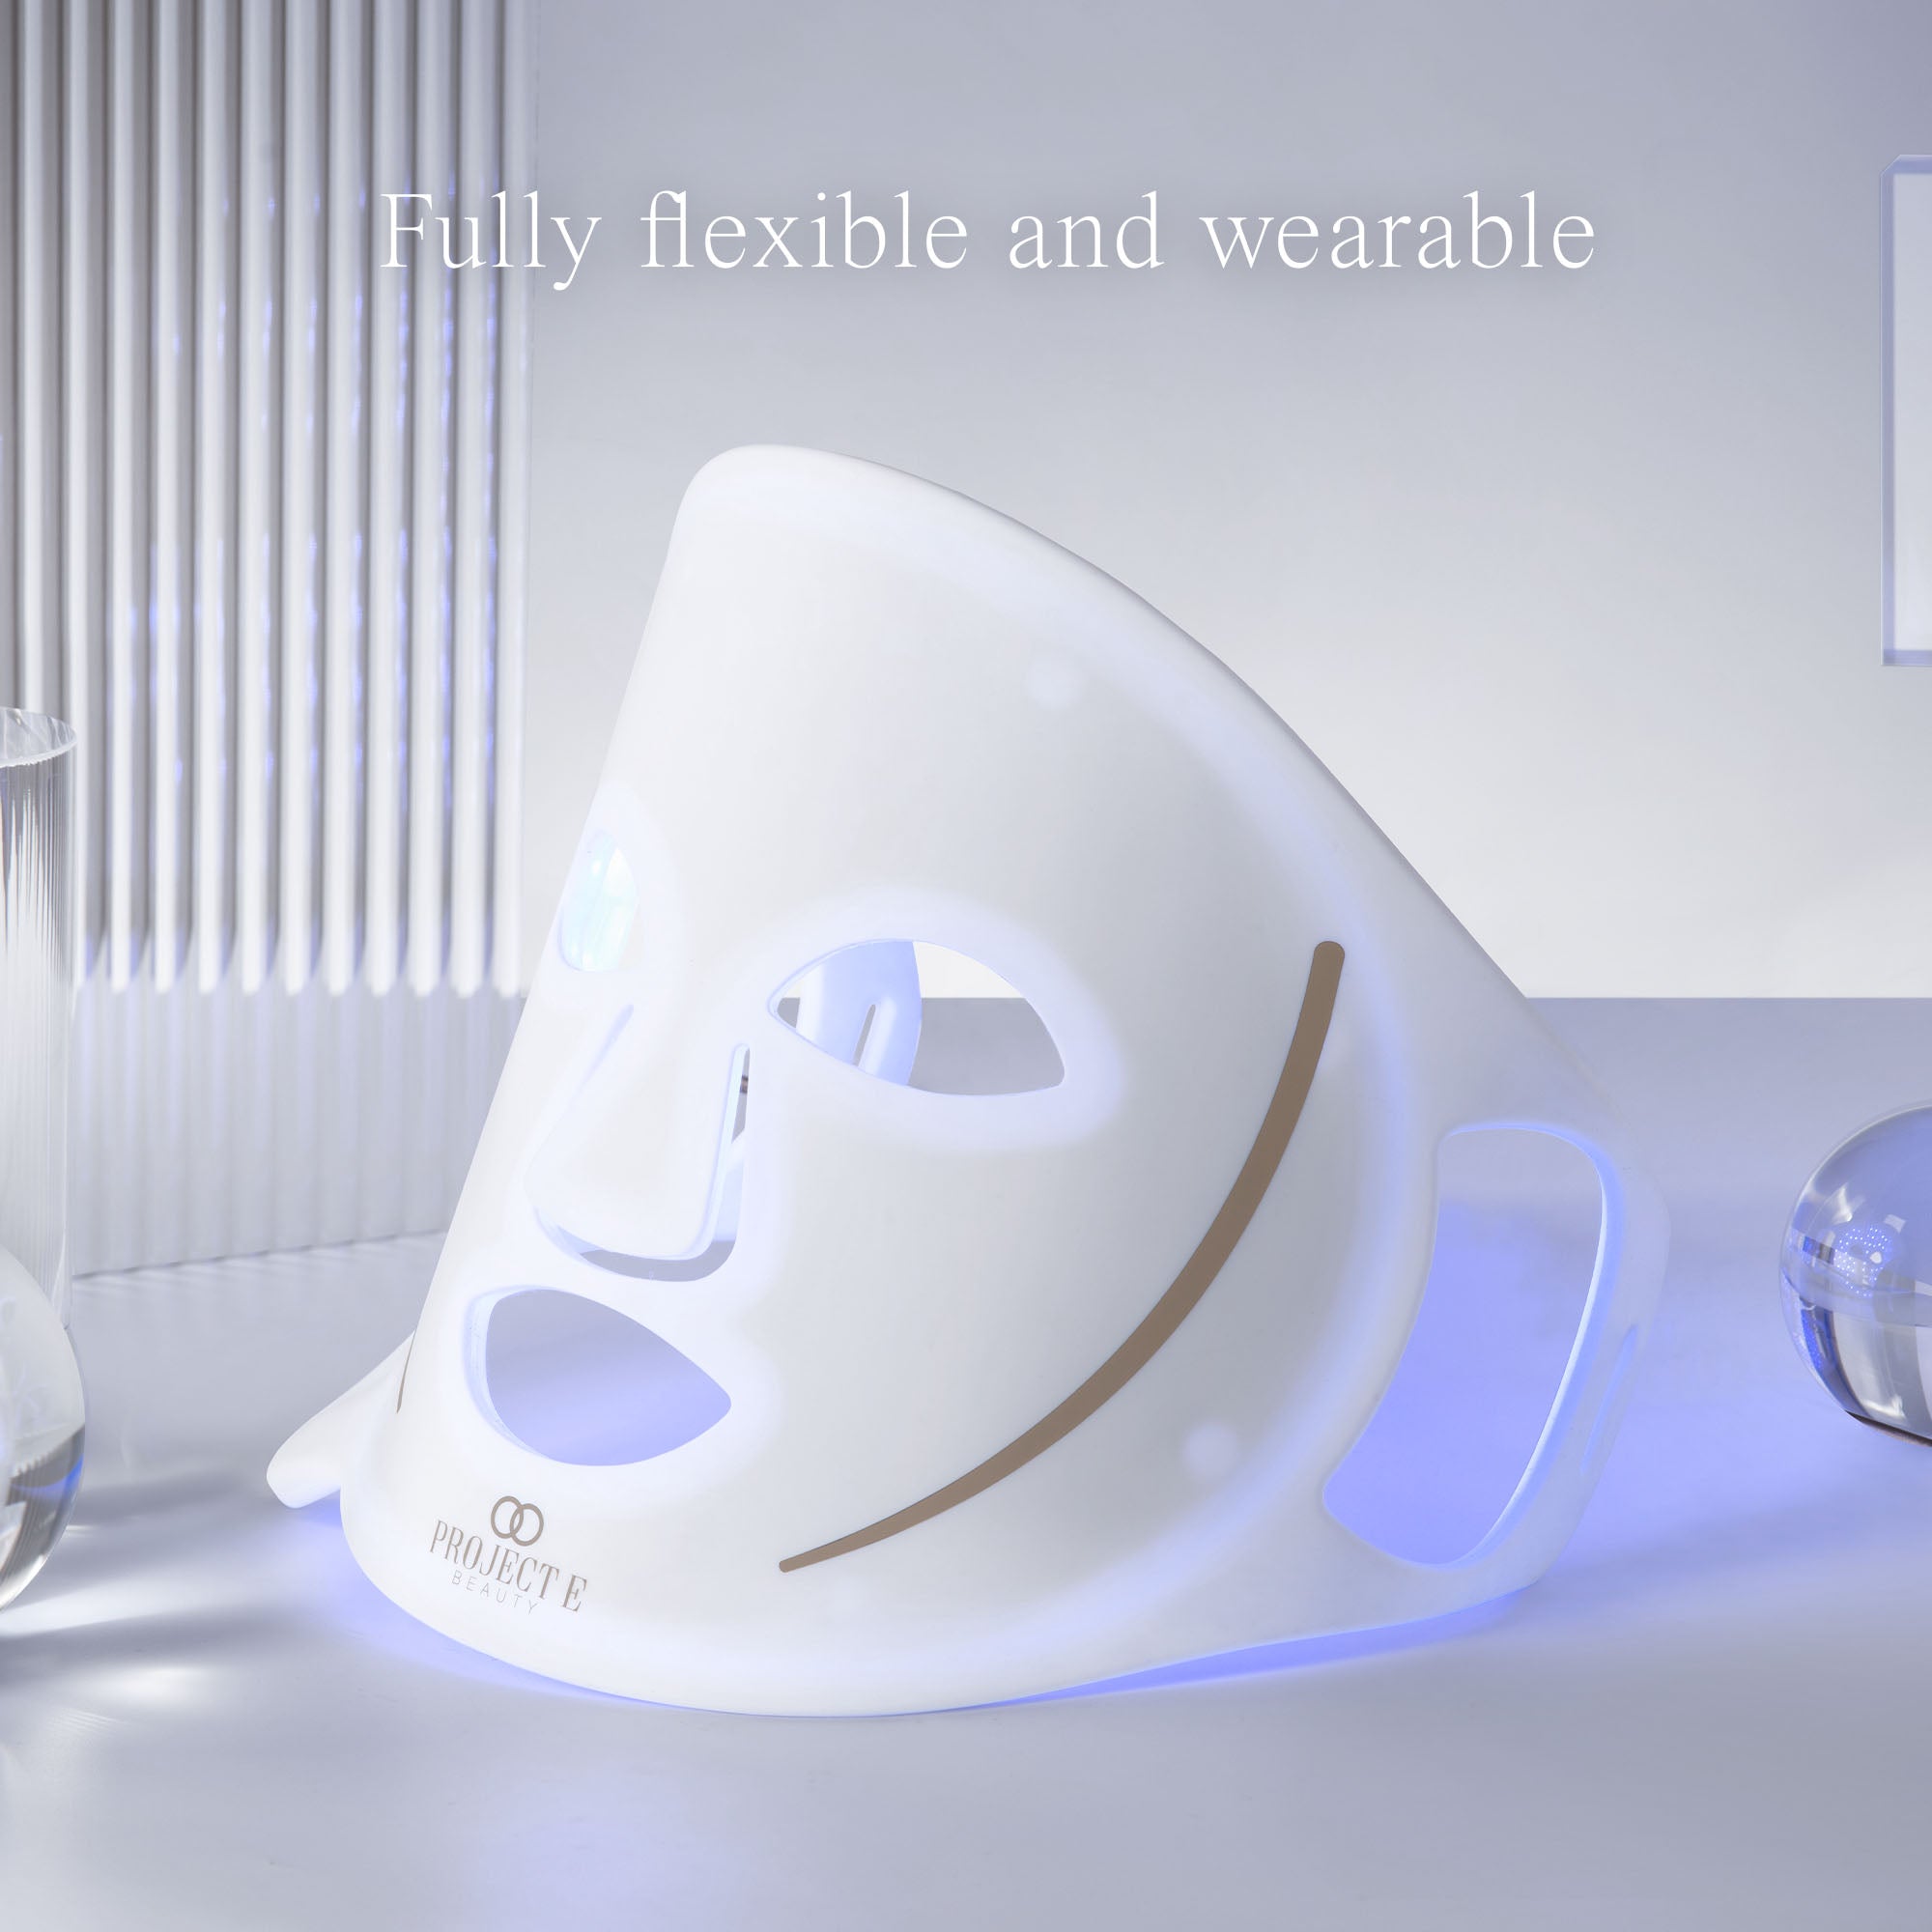 LightAura Flex | LED Face Mask - Silicon